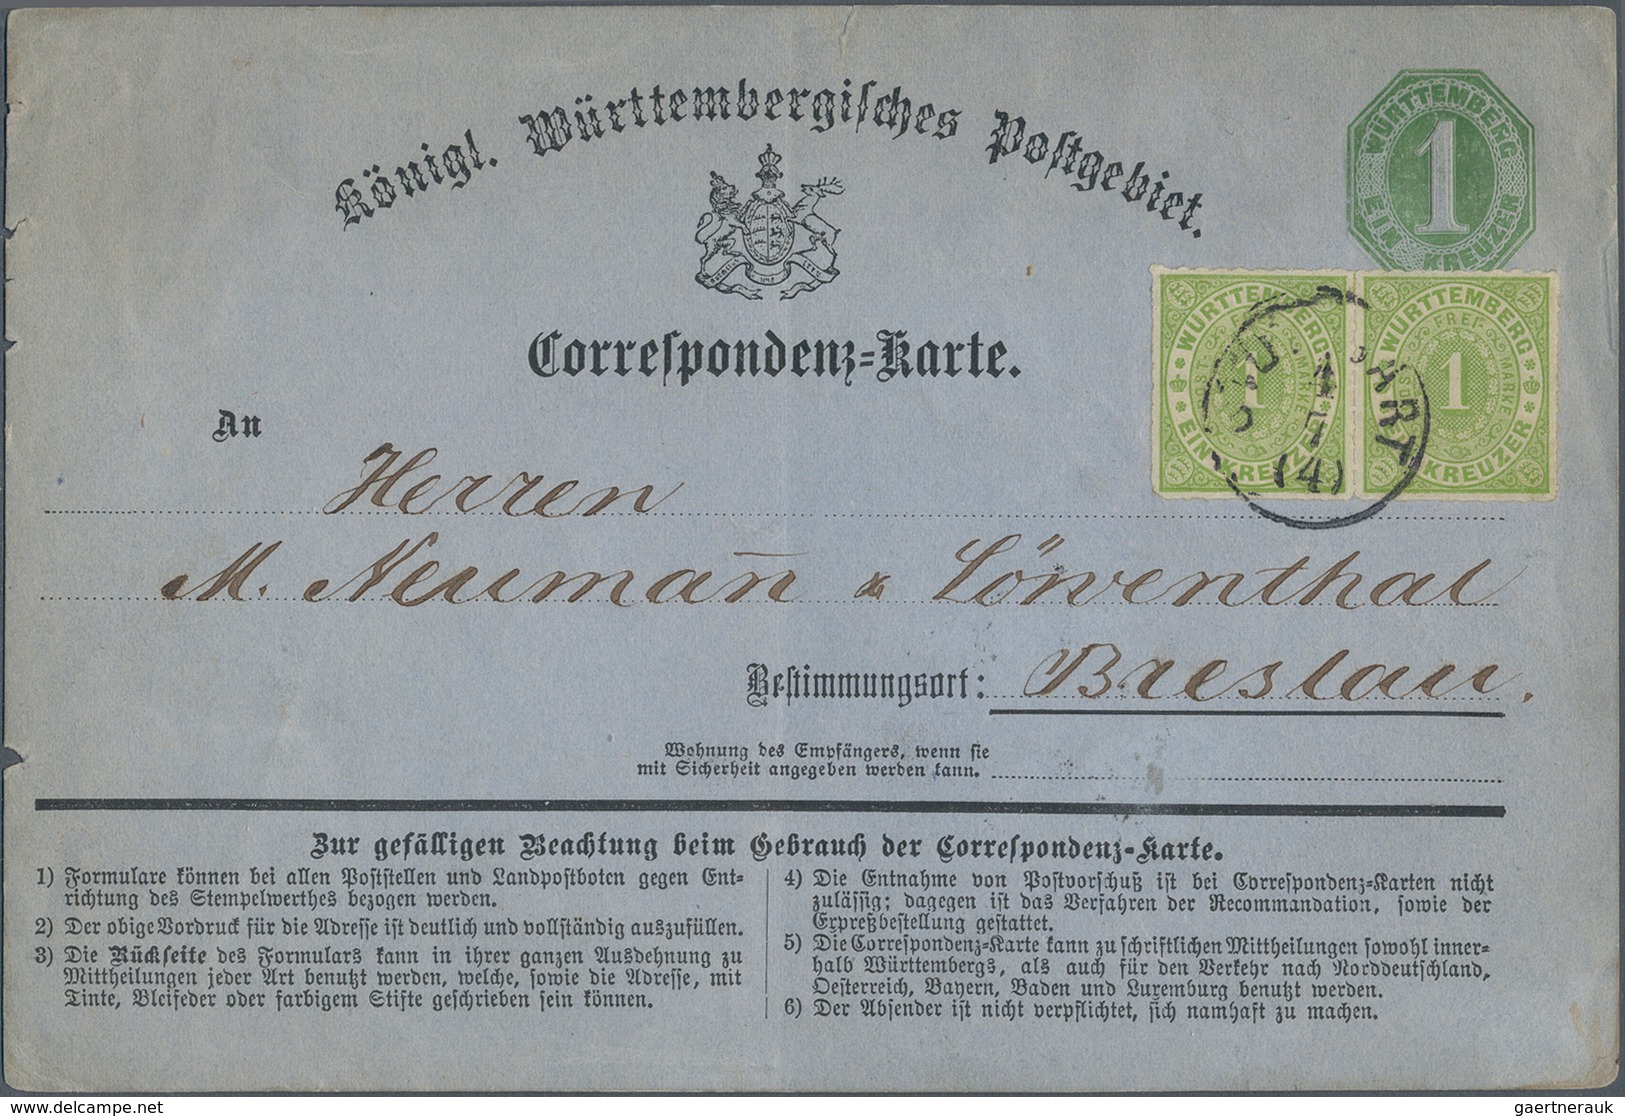 Württemberg - Marken und Briefe: 1853/1903 ca., Partie von ca. 40 Belegen nur Auslandspost sowohl Kr